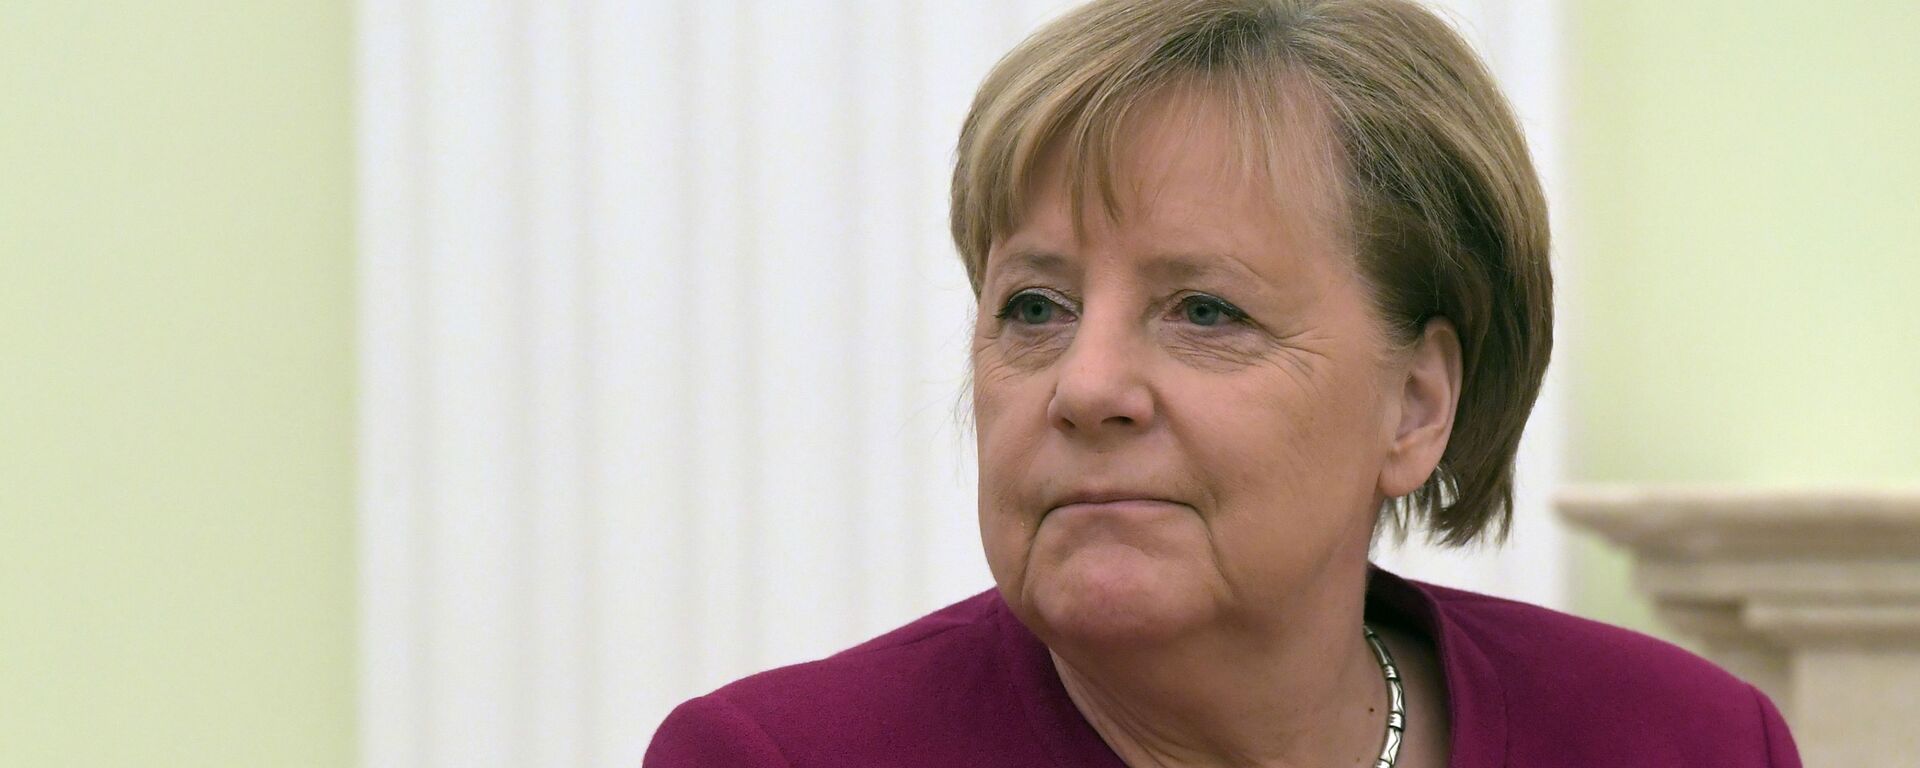 Vokietijos kanclerė Angela Merkel - Sputnik Lietuva, 1920, 31.05.2021